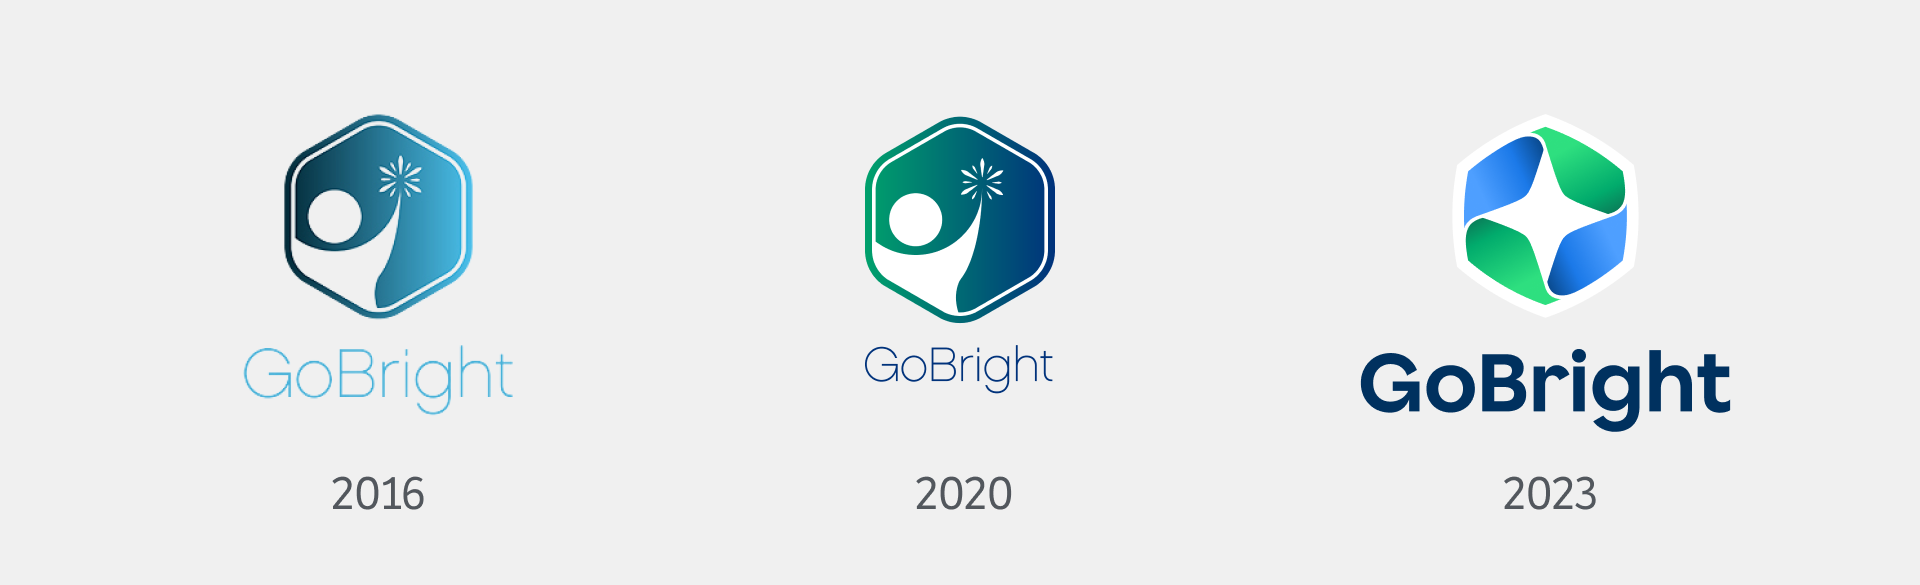 GoBright - Corporate Identity - Logo für das ganze Jahr - Rebranding